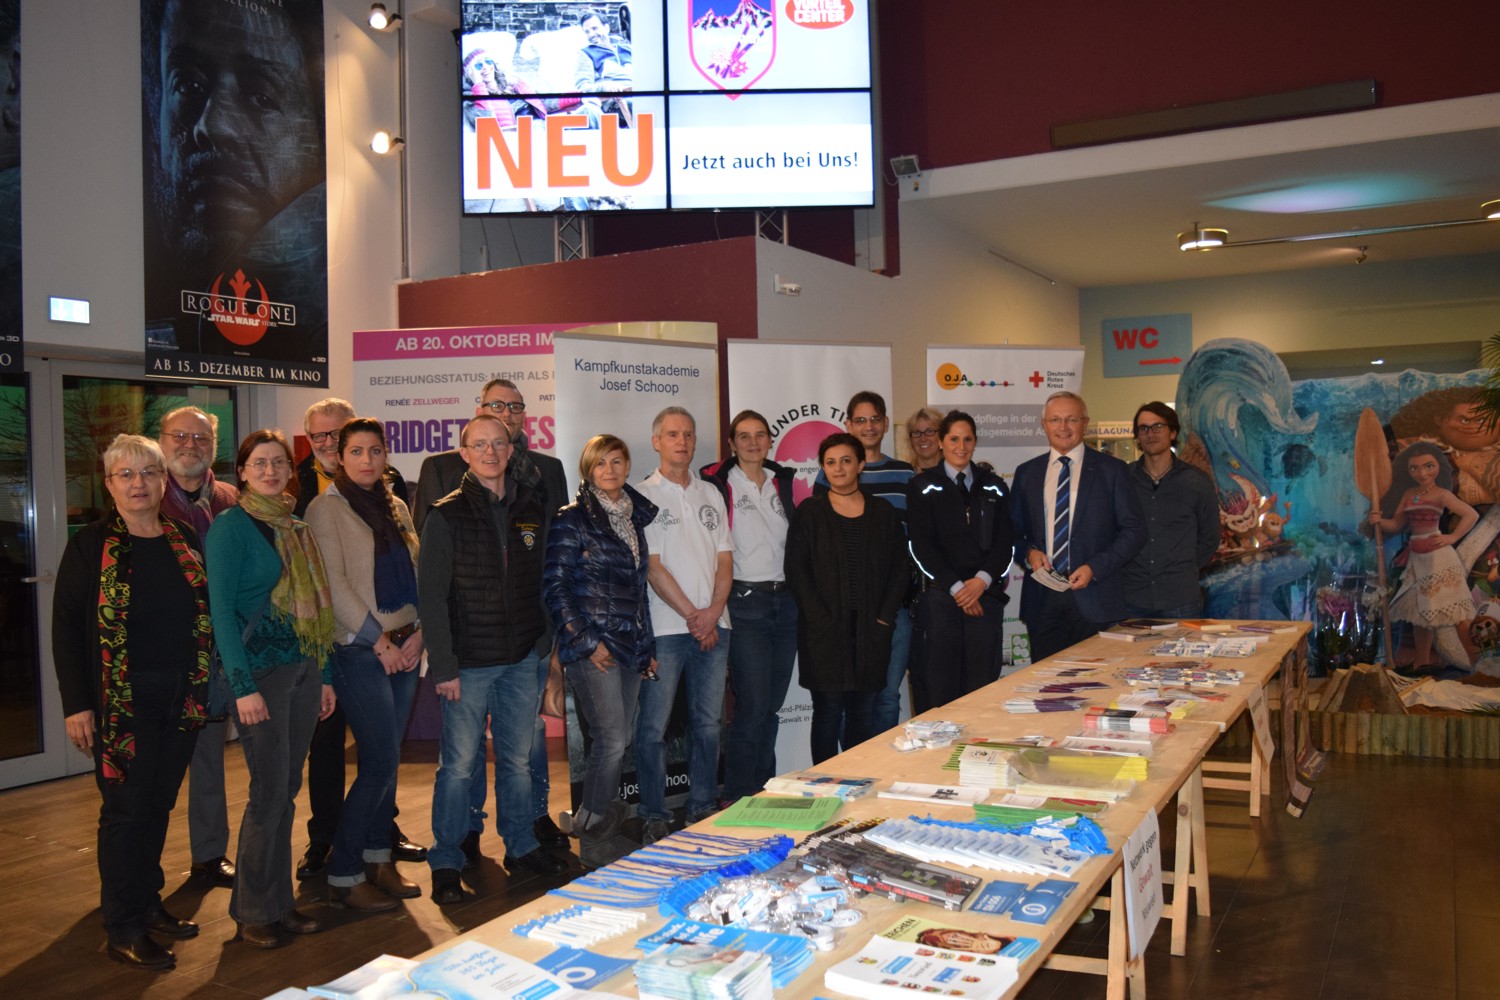 Foto: Vertreterinnen und Vertreter der Mitgliedsorganisationen des Netzwerkes gegen Gewalt im cine 5 in Asbach